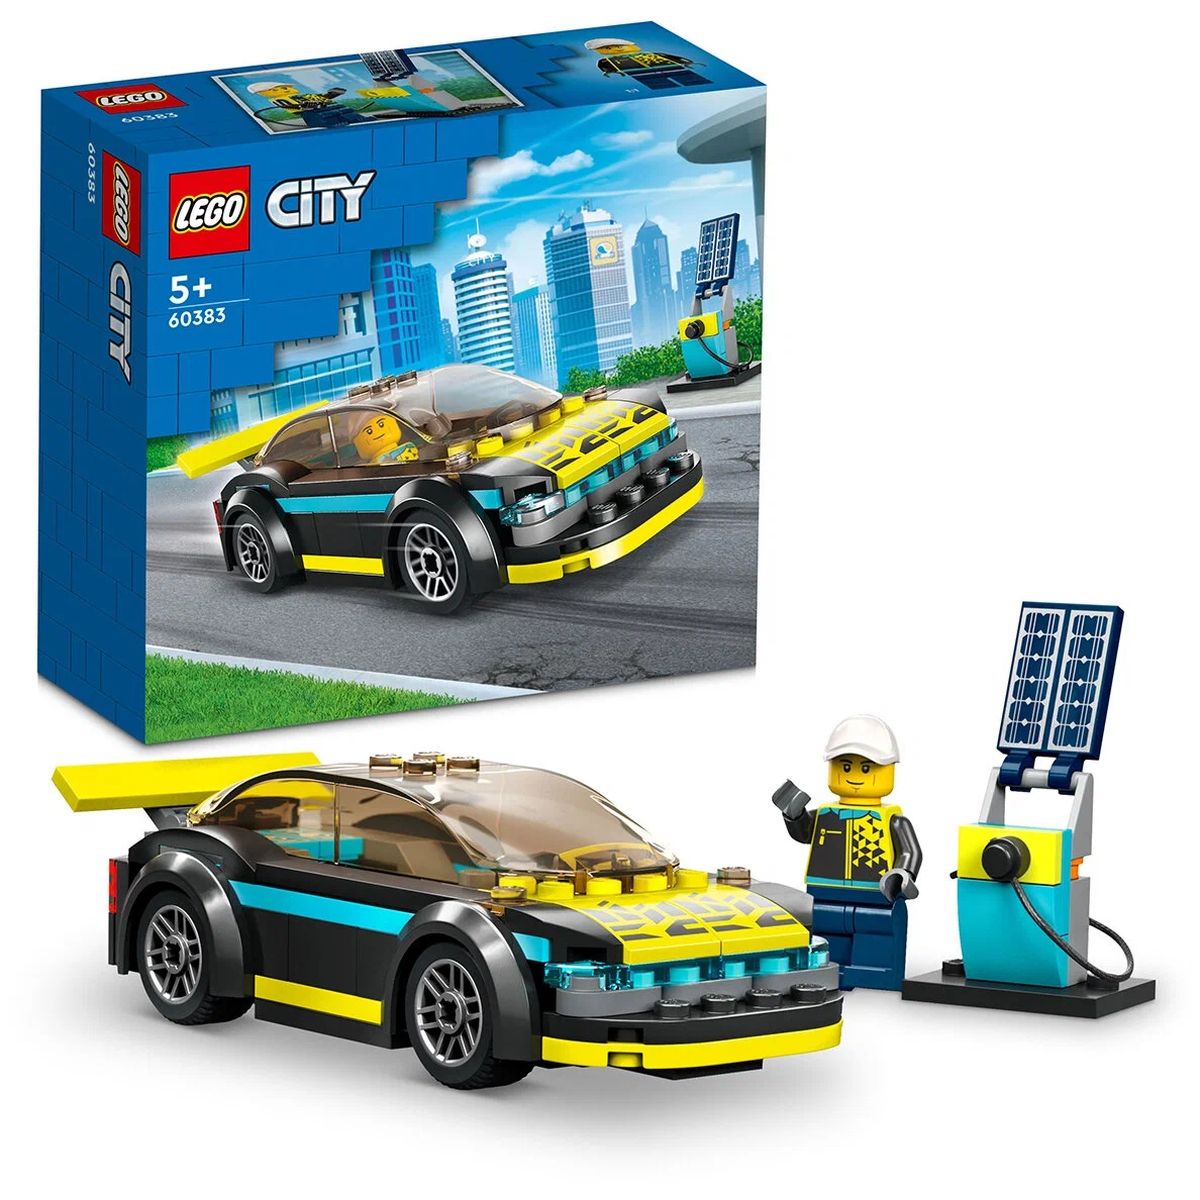 Конструктор LEGO City Электрический спорткар, 95 деталей, 60383 конструктор lego city 30585 автомобиль пожарной охраны